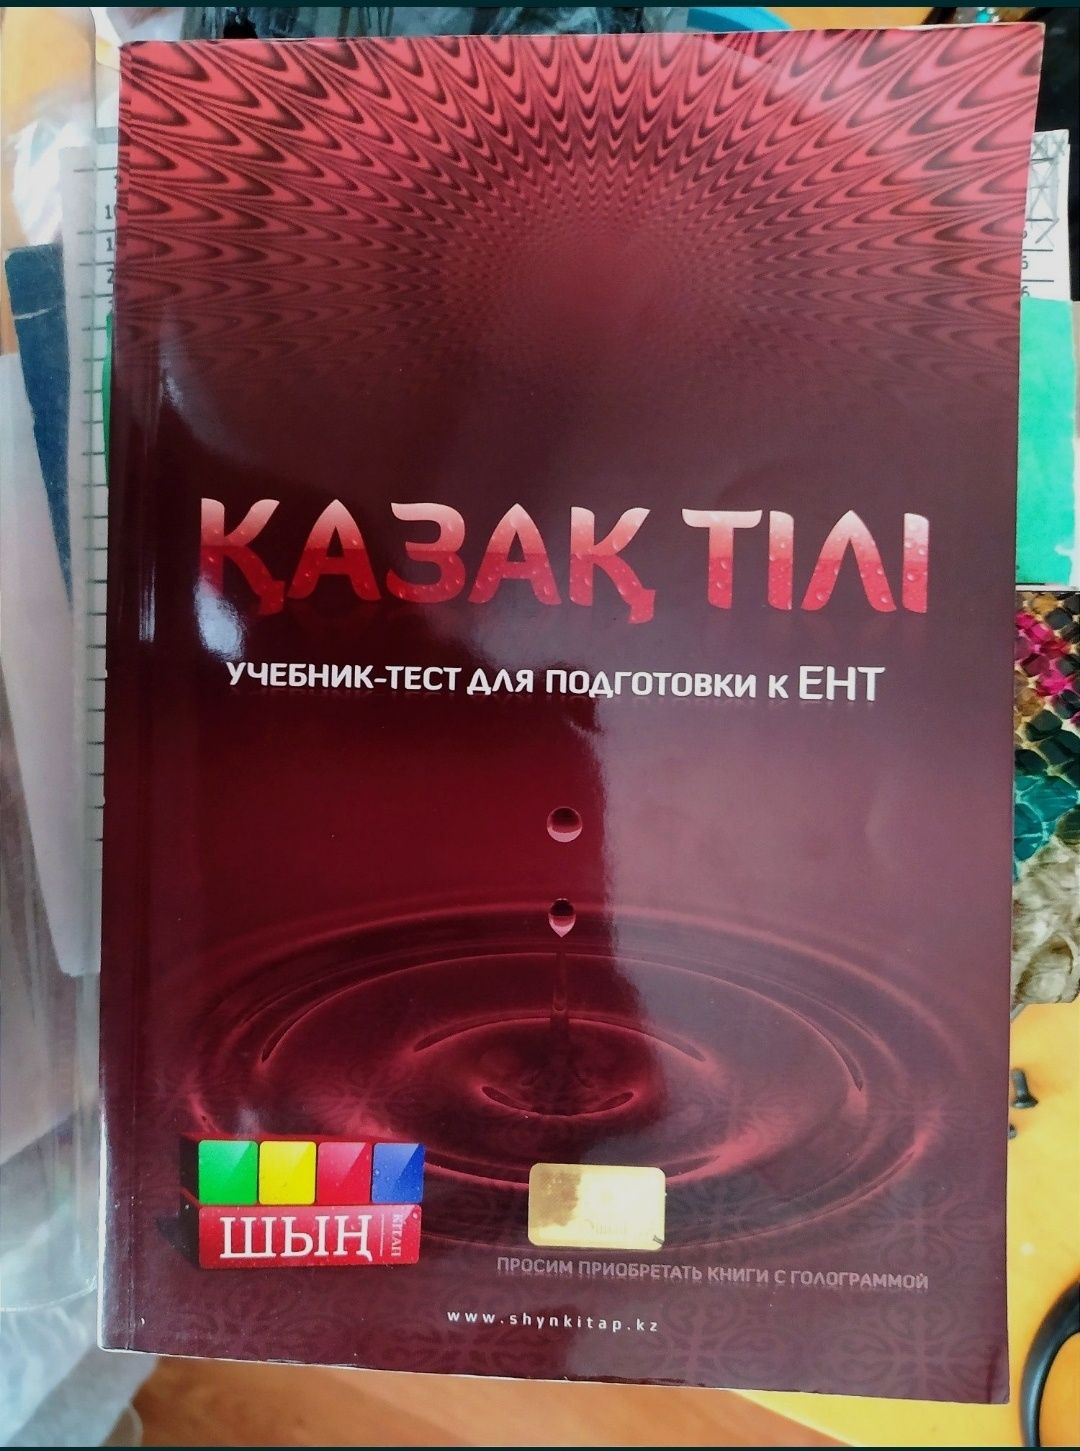 Учебник-тест для подготовки к ЕНТ по казахскому языку.